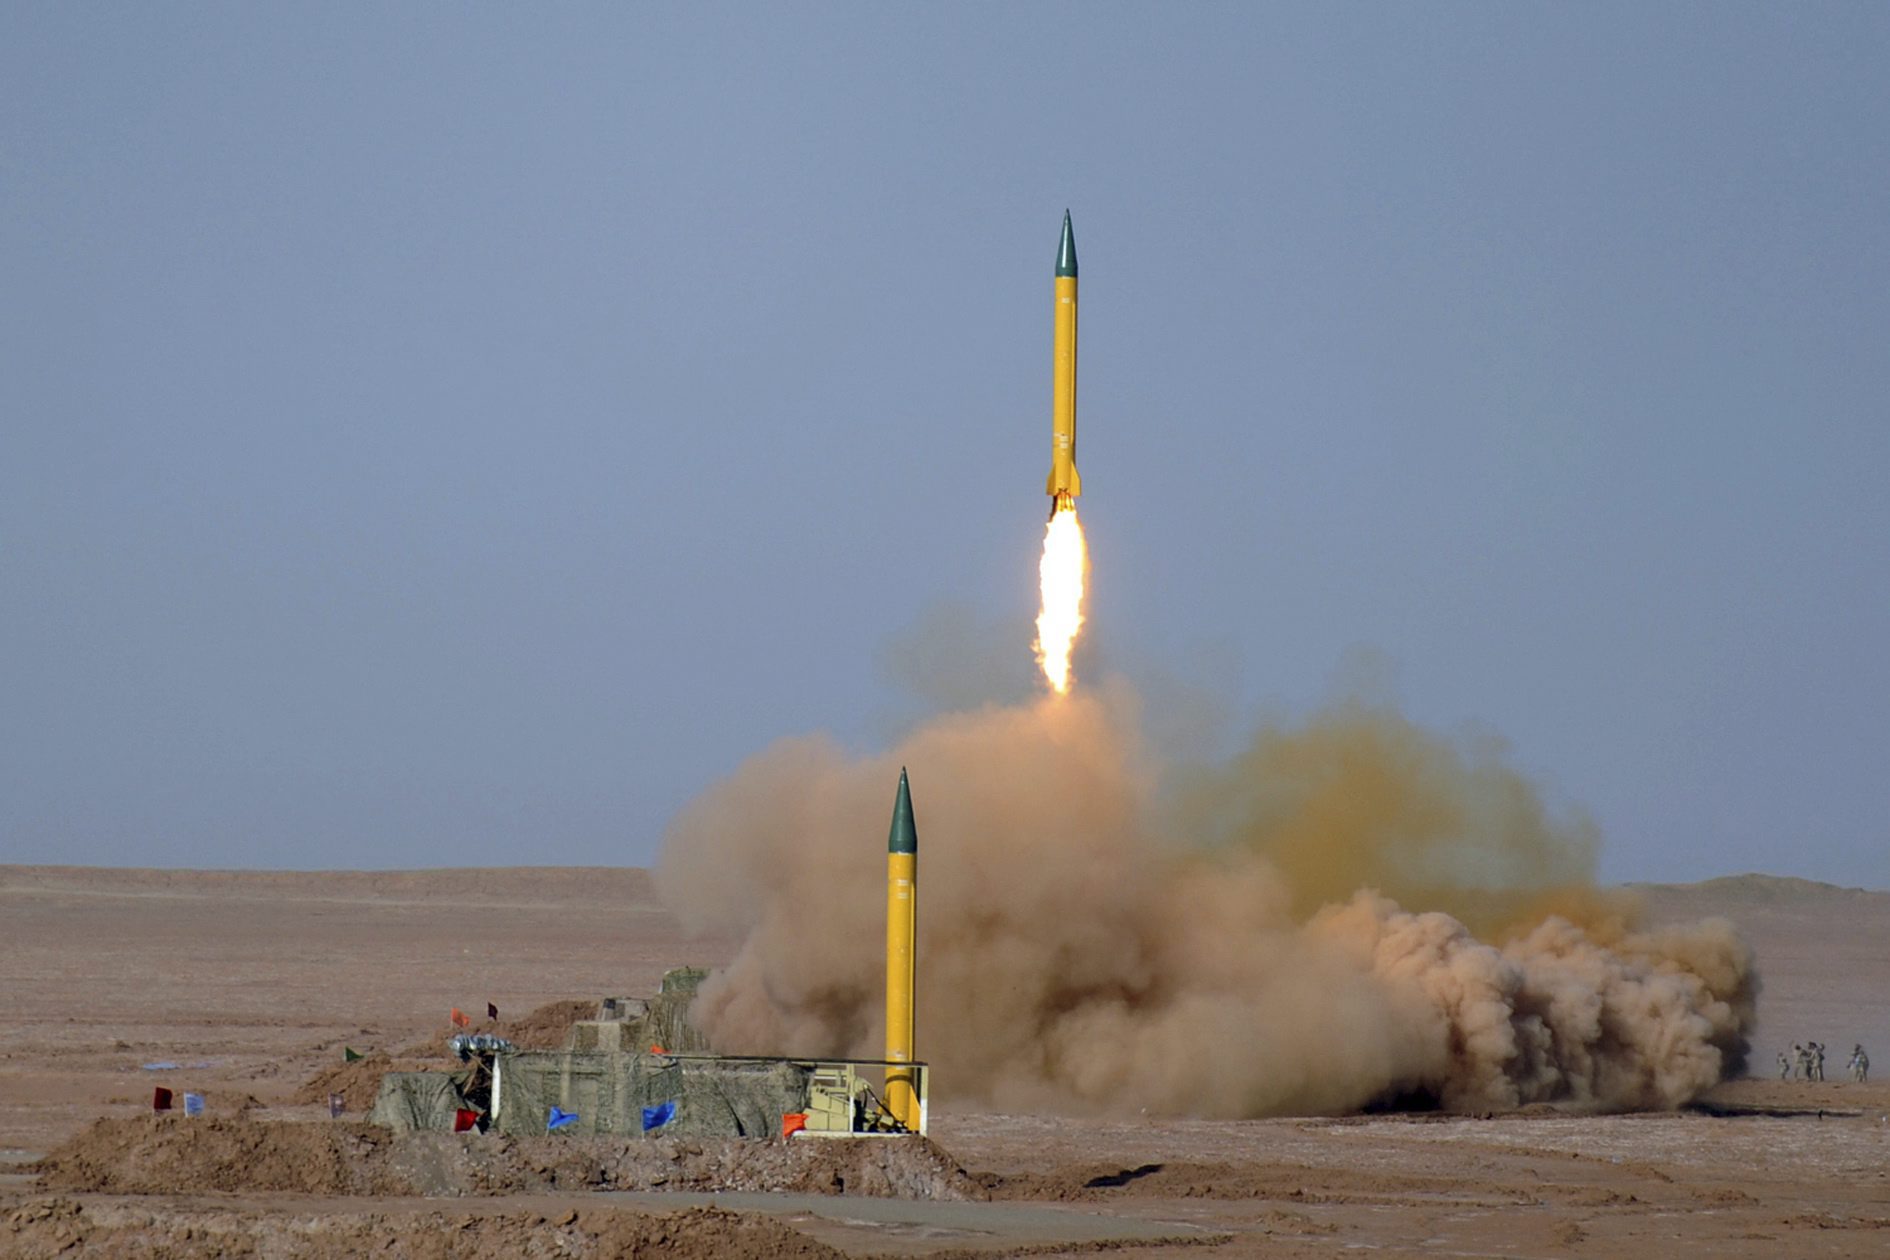 Επιβεβαιώνει το Ιράν την πυραυλική δοκιμή, «δεν συνιστά παραβίαση»